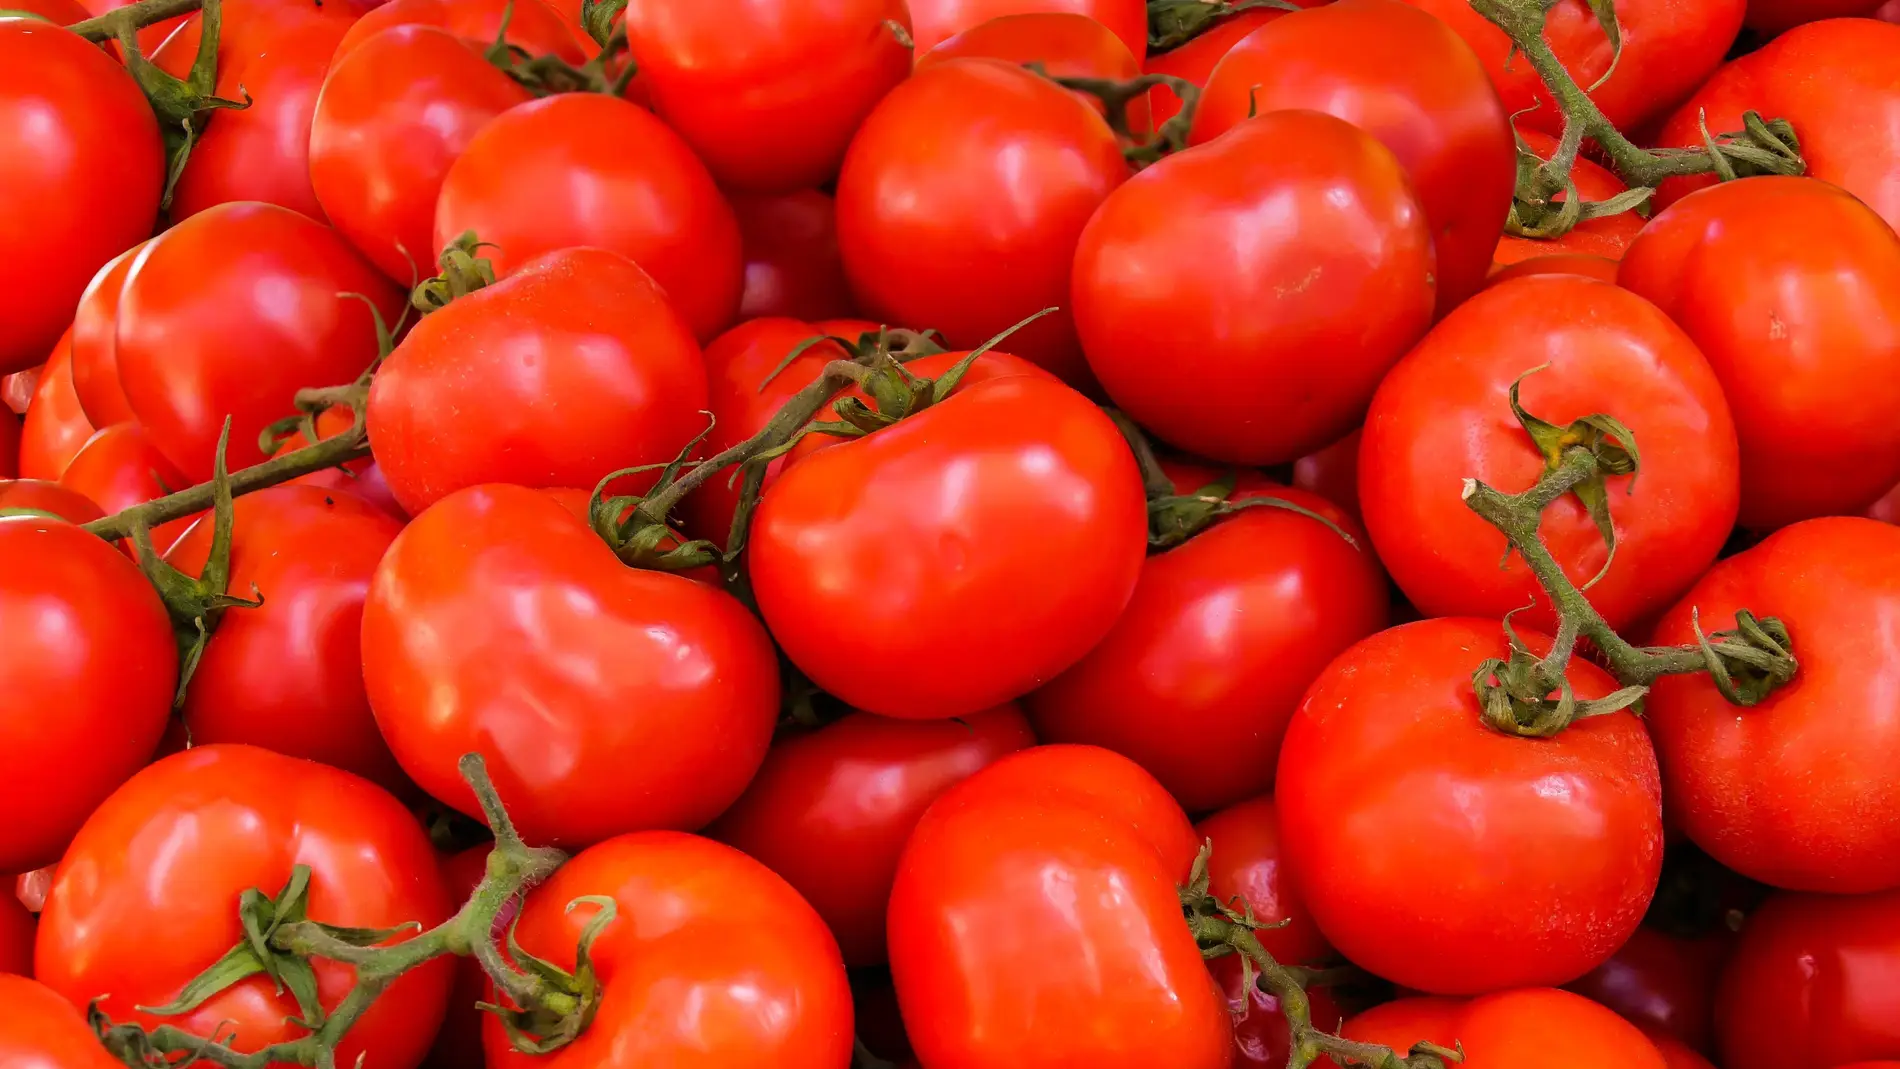  Imagen de tomates